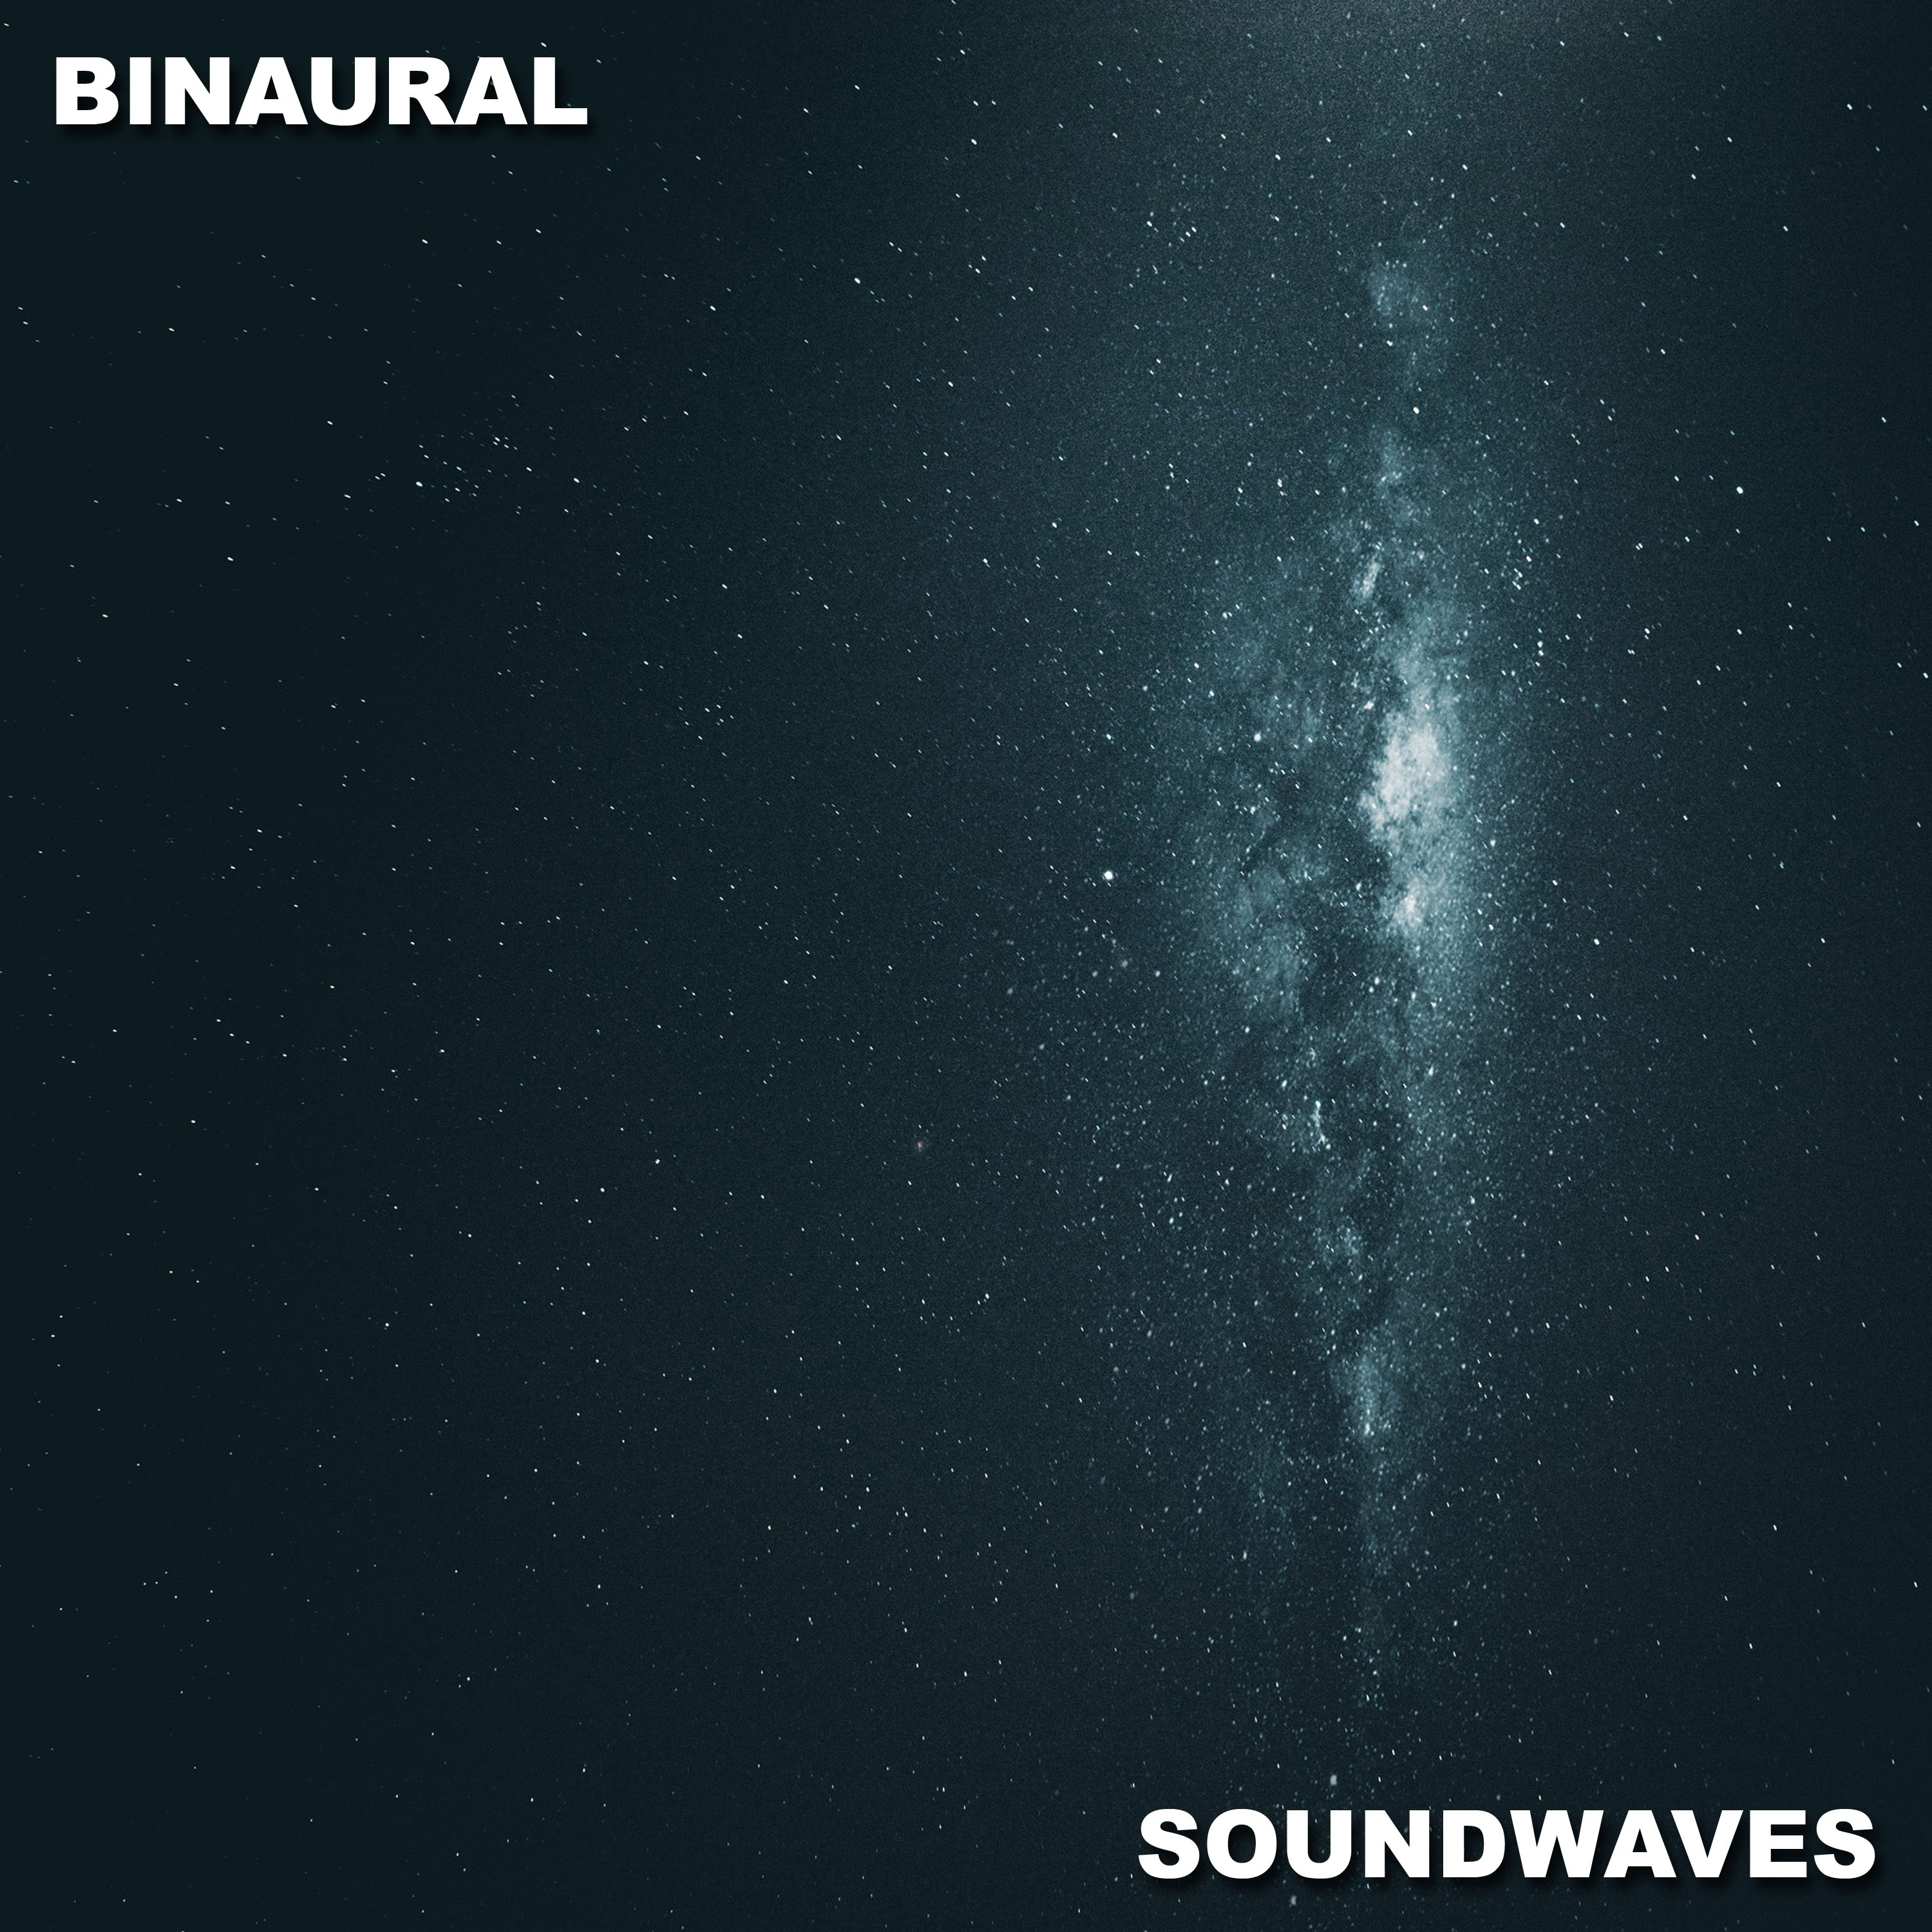 12 Relaxing Binaural Soundwaves